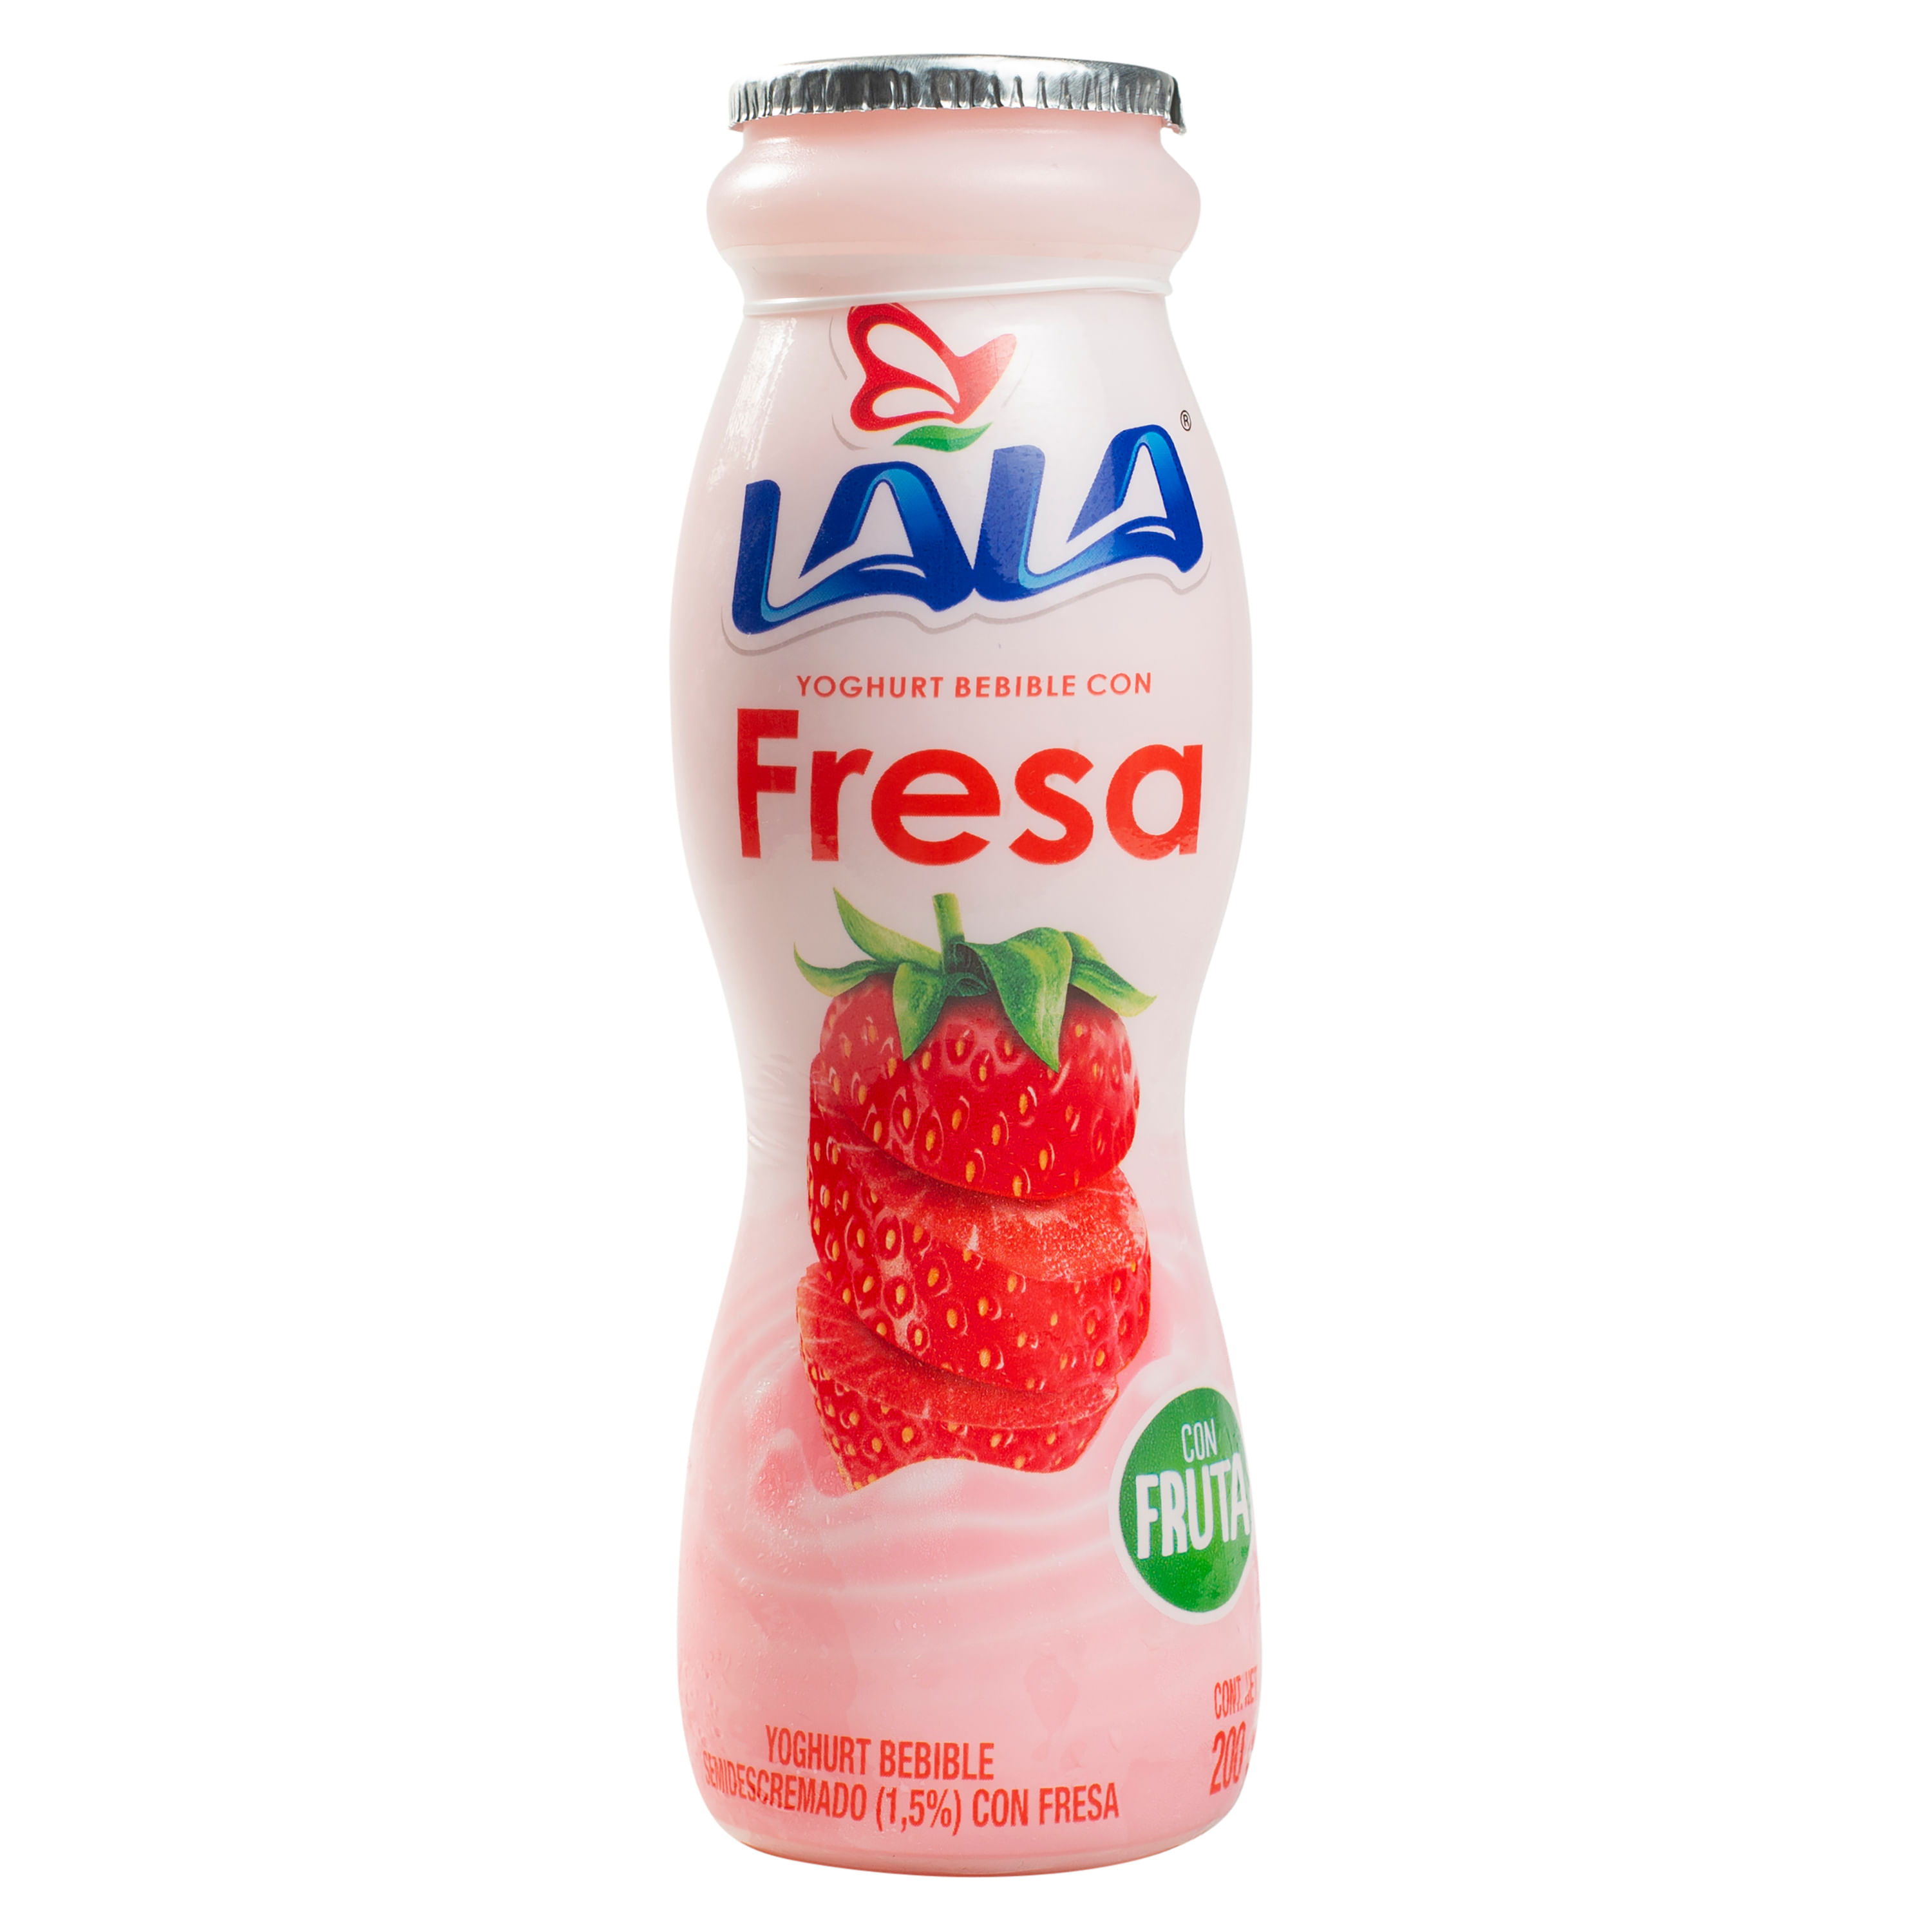 Yogurt-Lala-Bebible-Fresa-200gr-1-41070